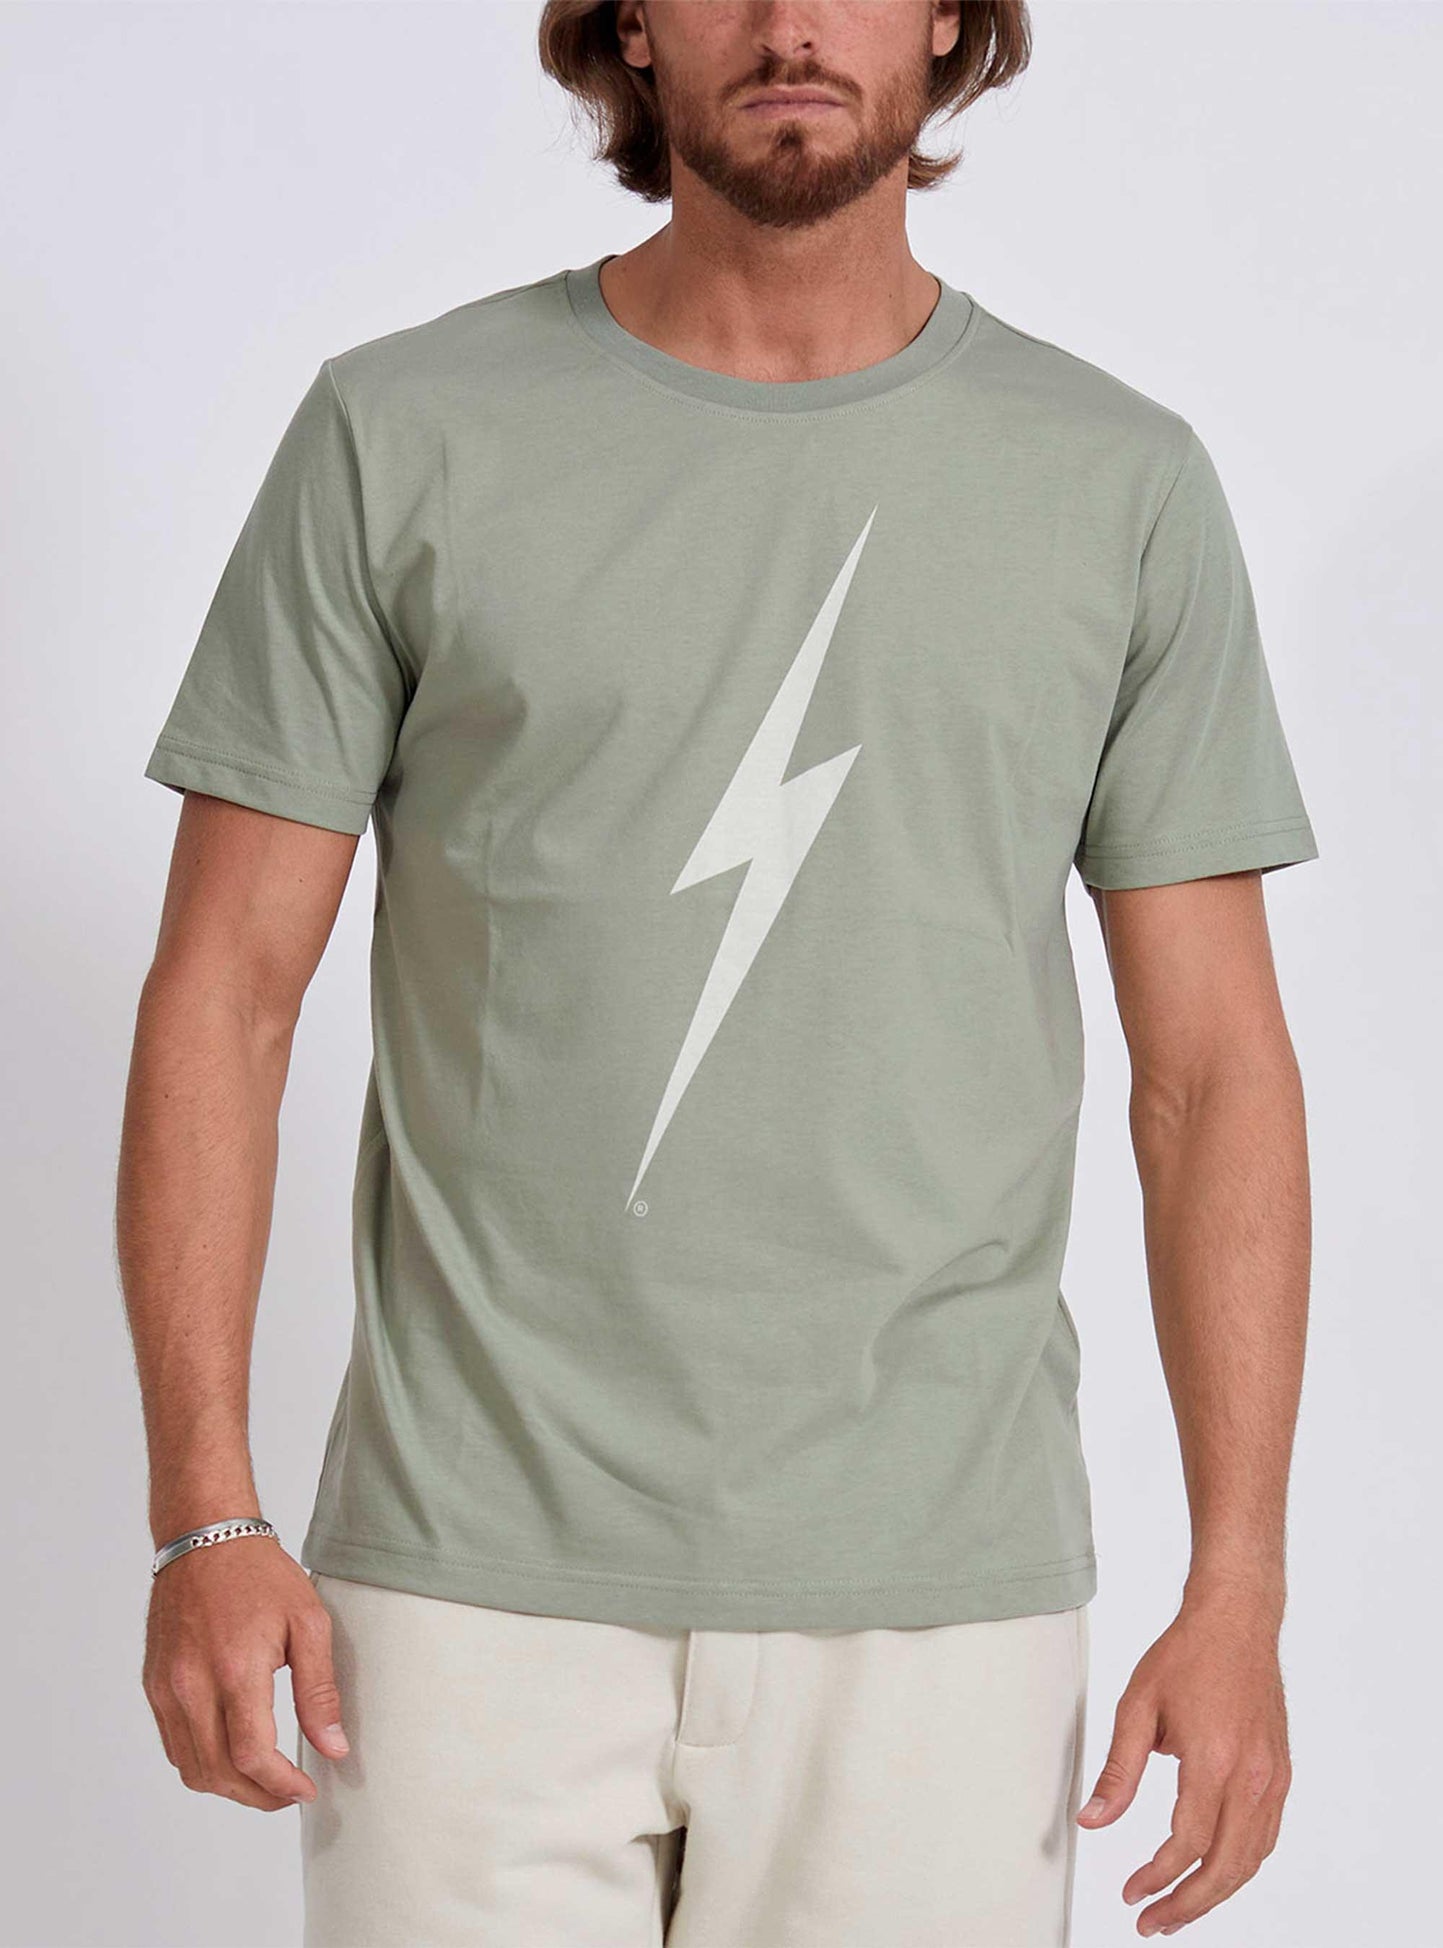 T-shirt Lightning Bolt Forever Tee | Sport Zone MKP